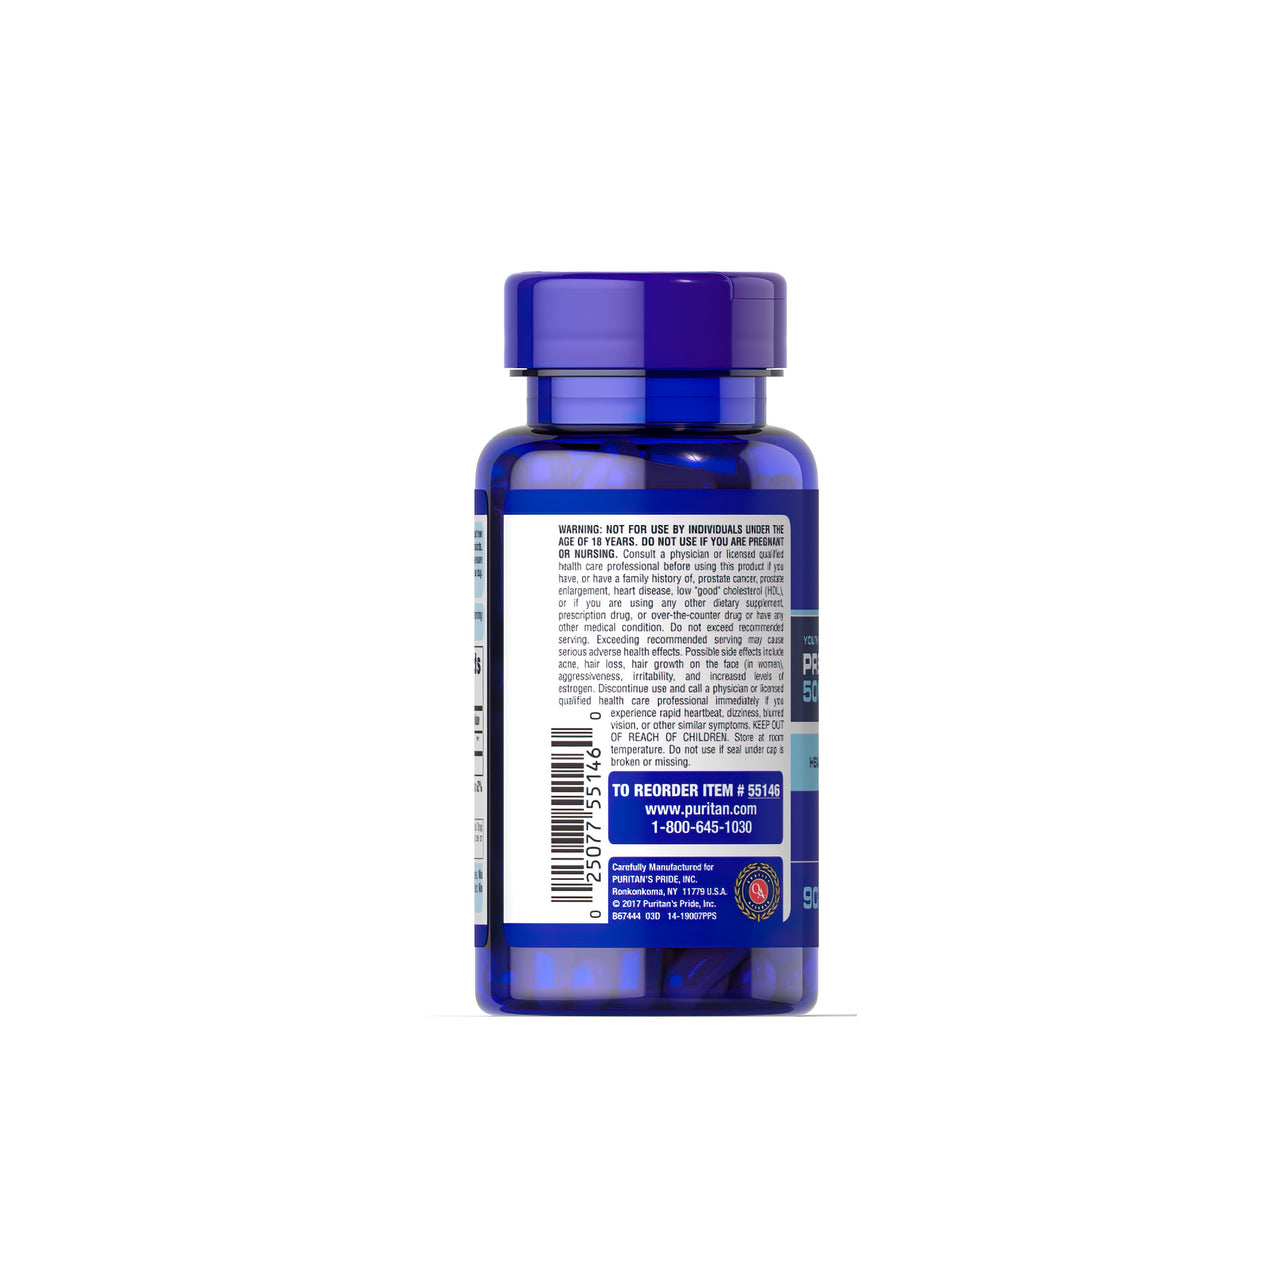 Au dos d'un flacon bleu portant une étiquette avec les mots-clés "healthy aging" et "aging regimen" se trouve la Pregnenolone 50 mg 90 Rapid Release Capsules de Puritan's Pride.